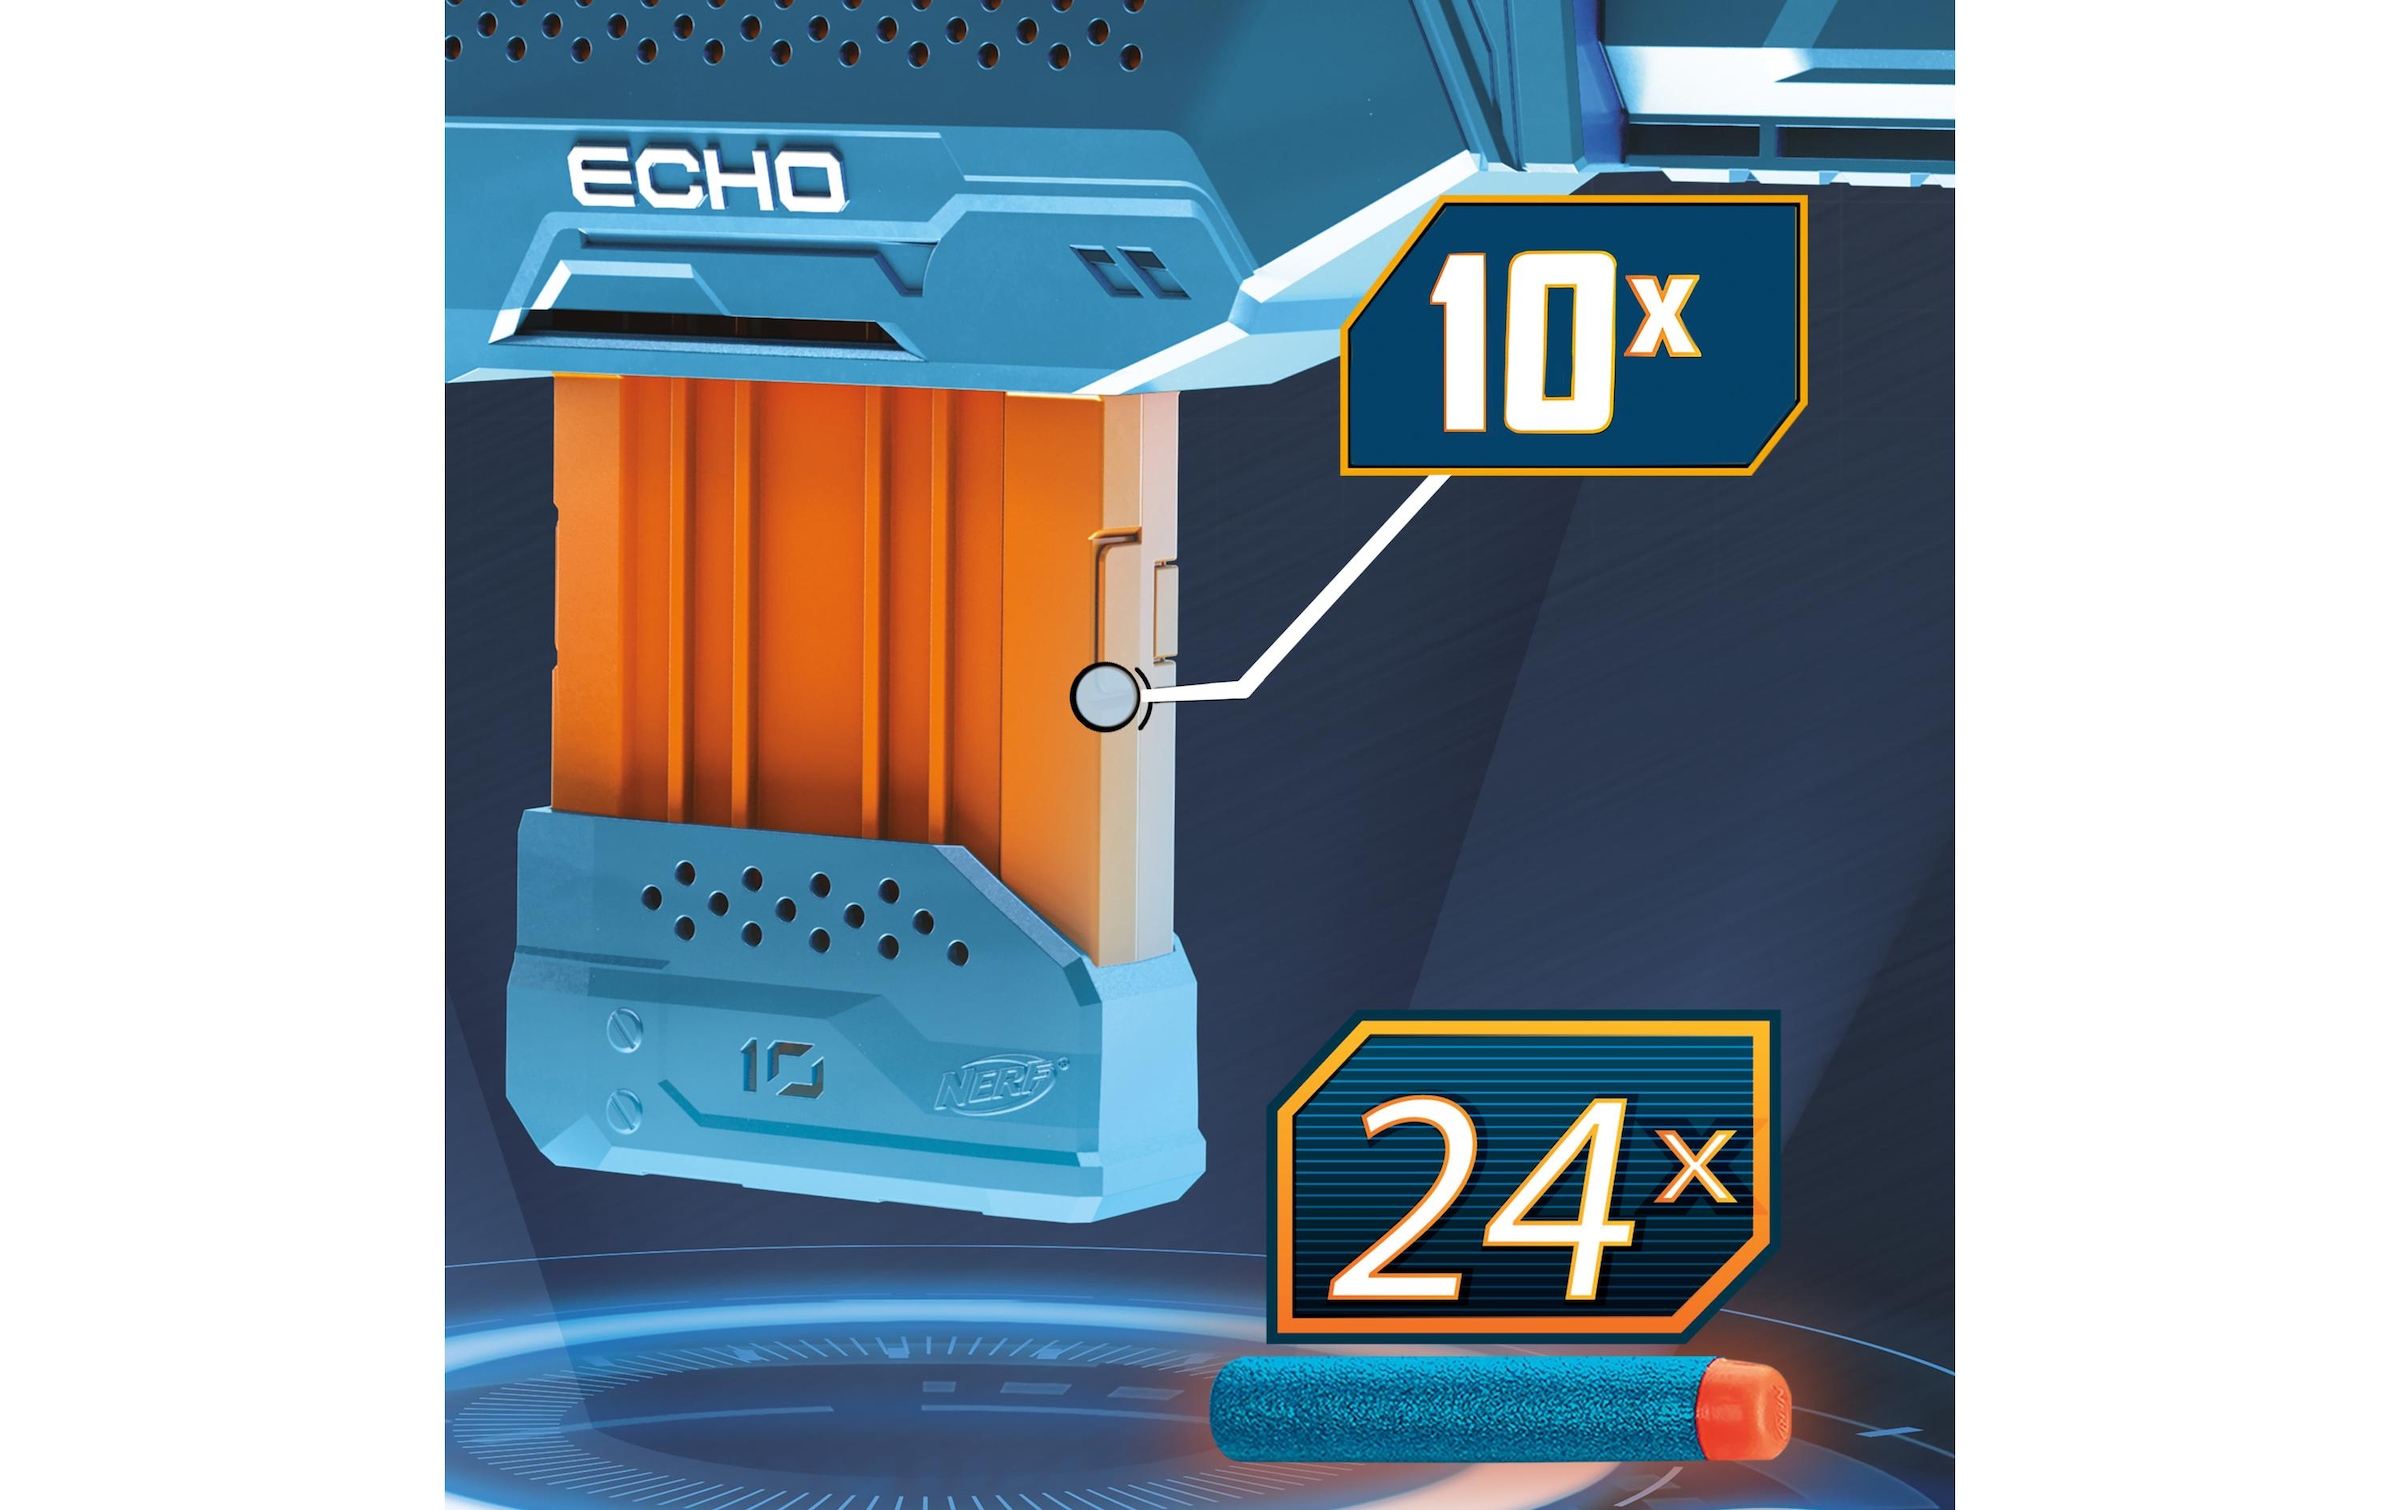 Nerf Blaster »2.0 Echo CS-10«